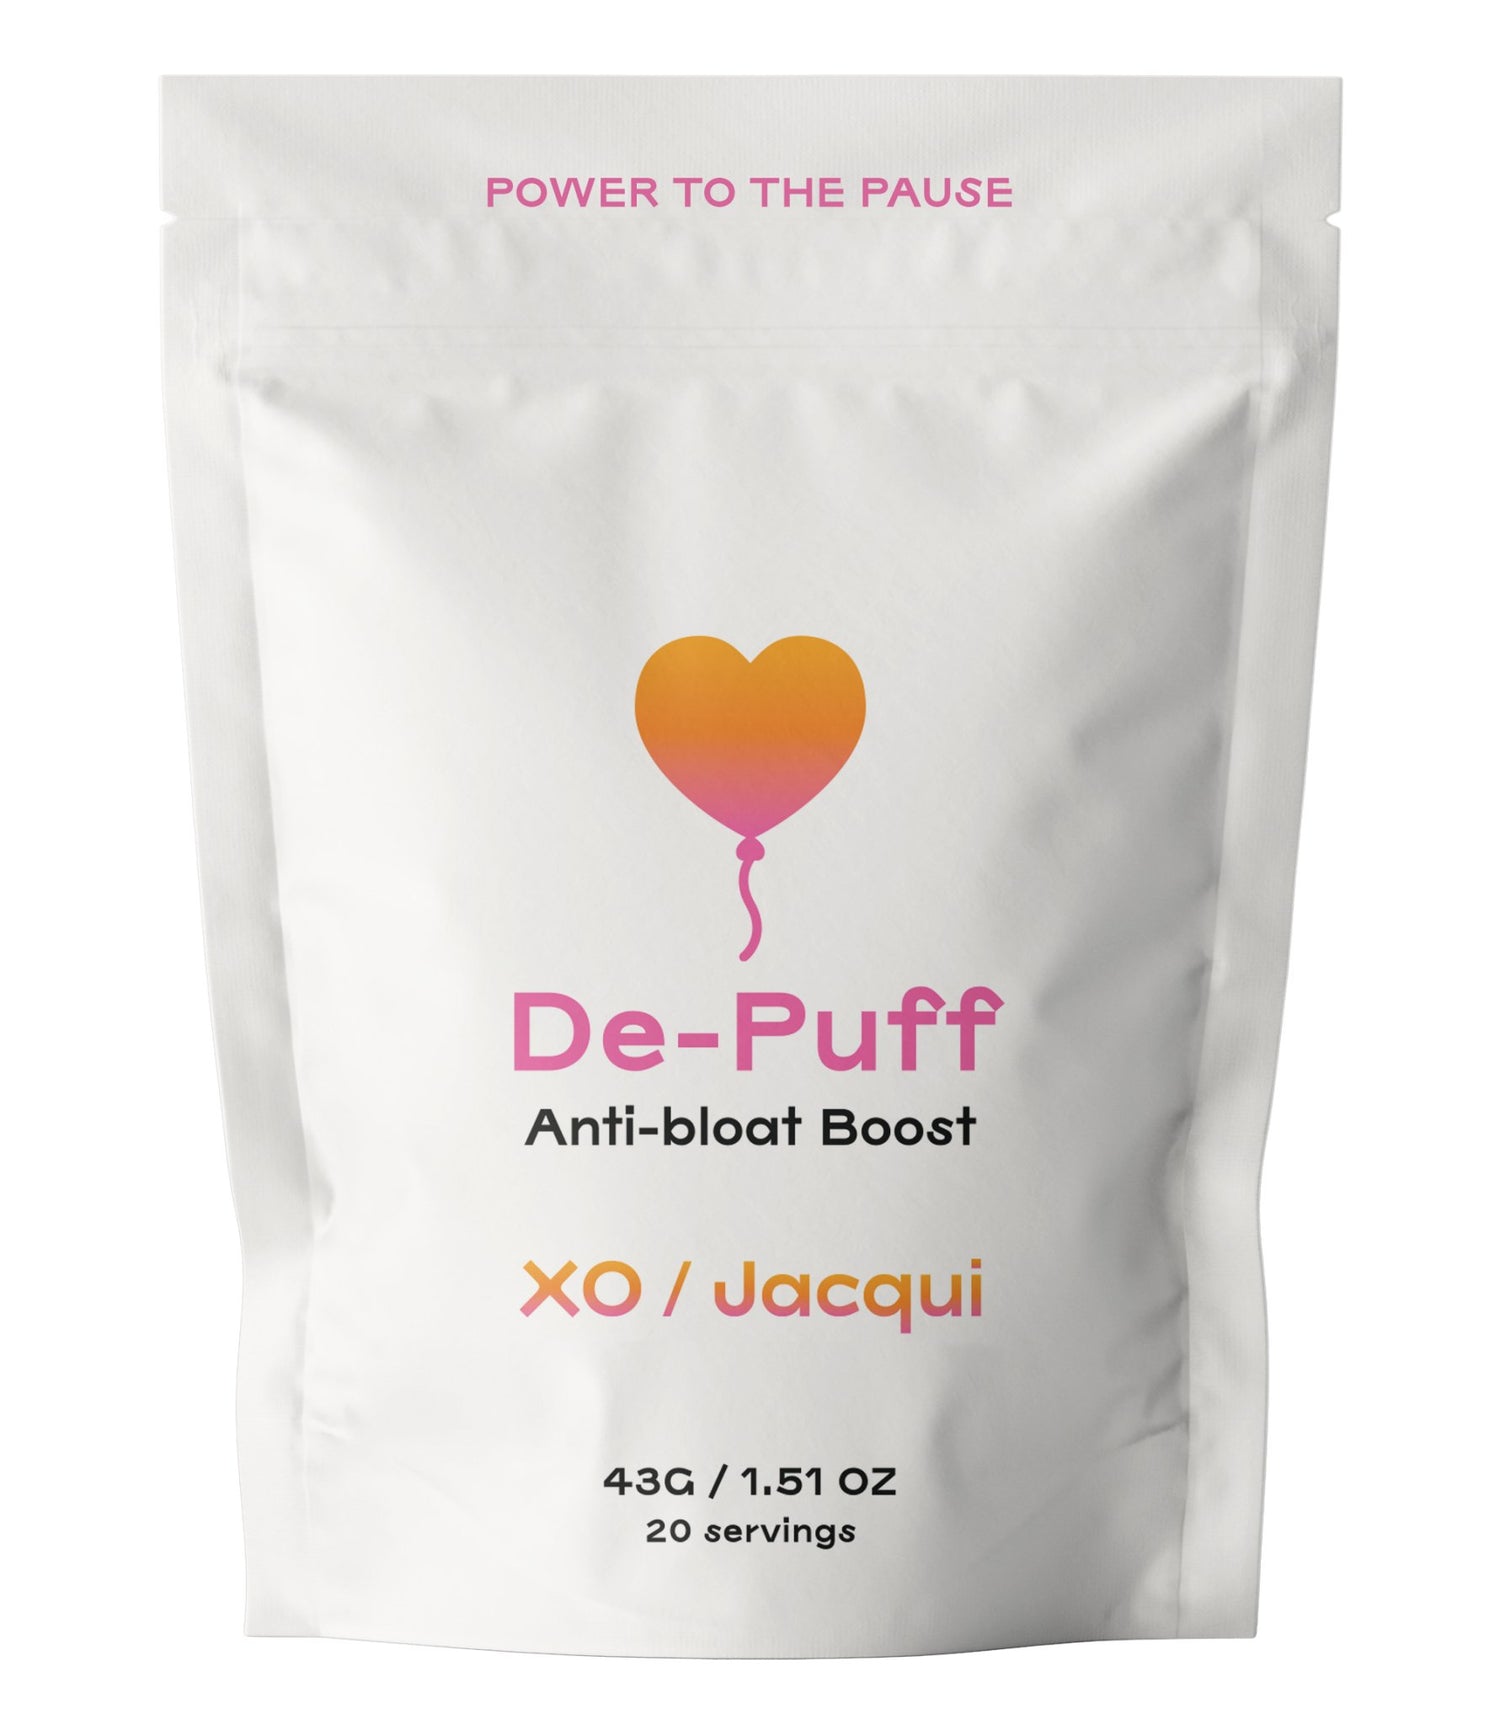 Power to the Pause | De-Puff Anti-Bloat Boost | De-Puff Boost - XO Jacqui